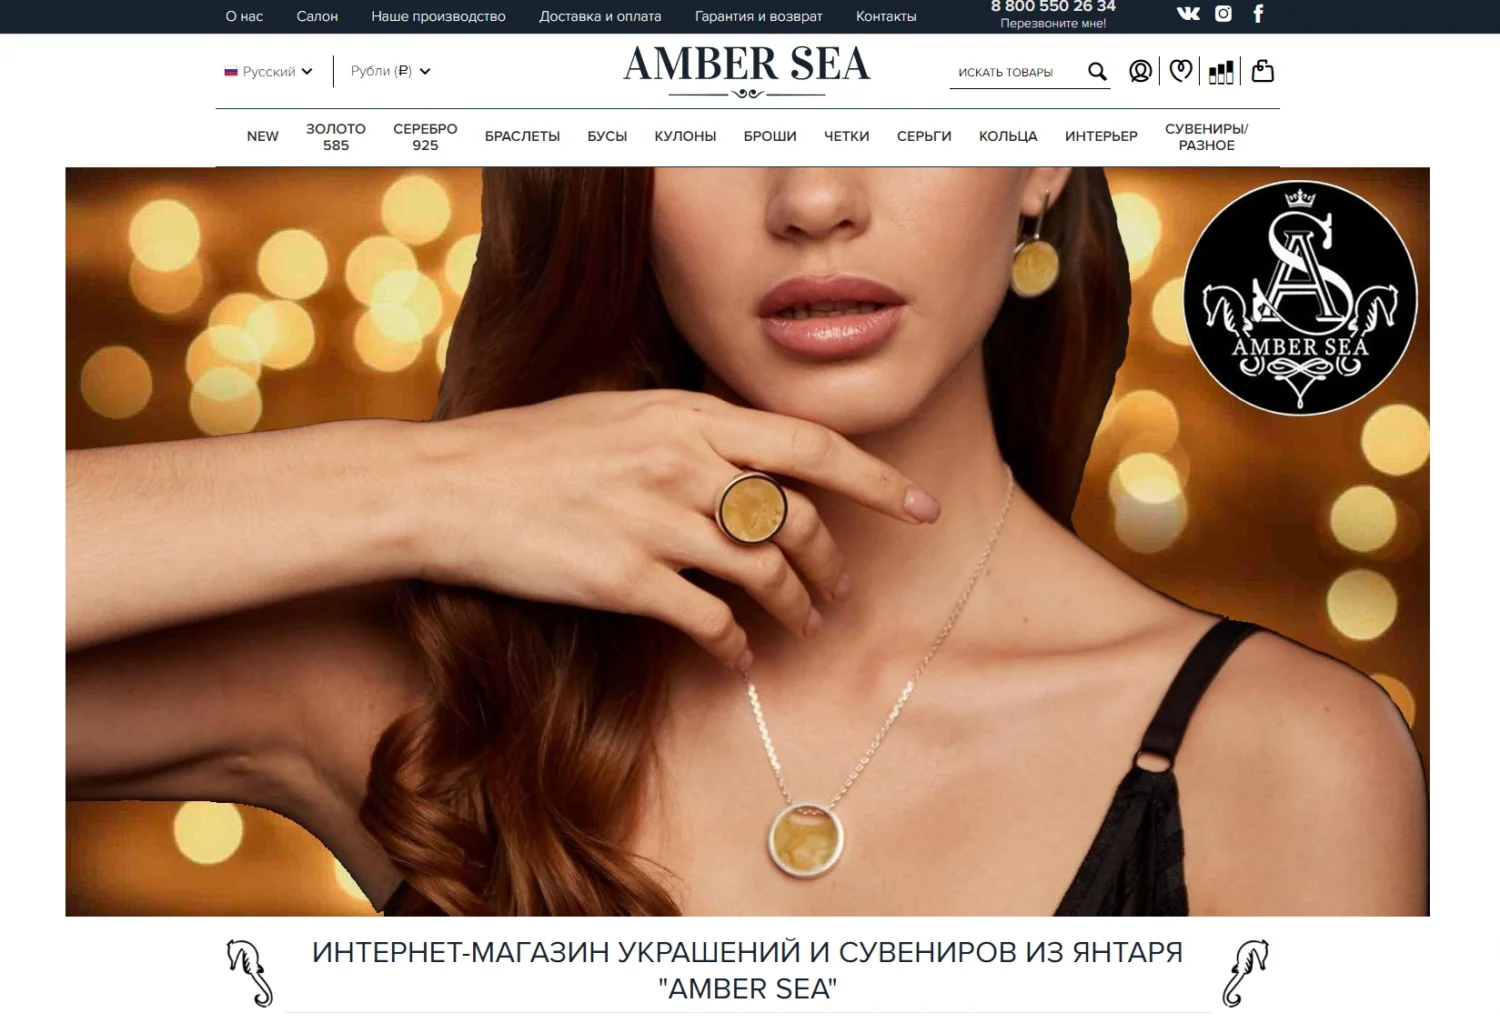 Amber Sea - ювелирные украшения из янтаря